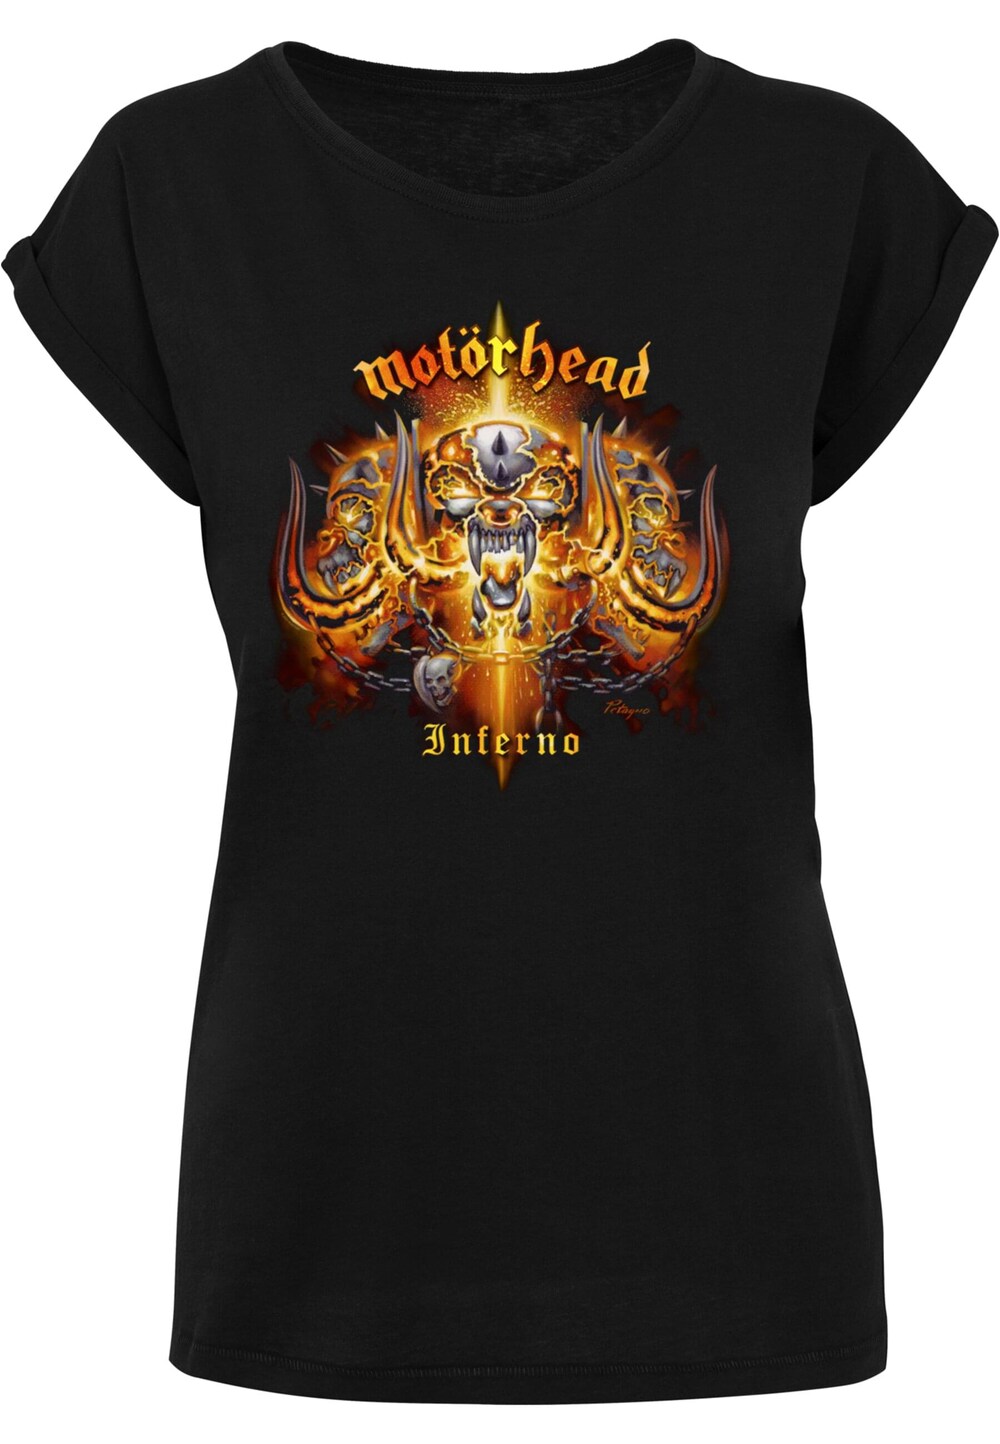 Рубашка Merchcode Motorhead - Inferno Cover, черный